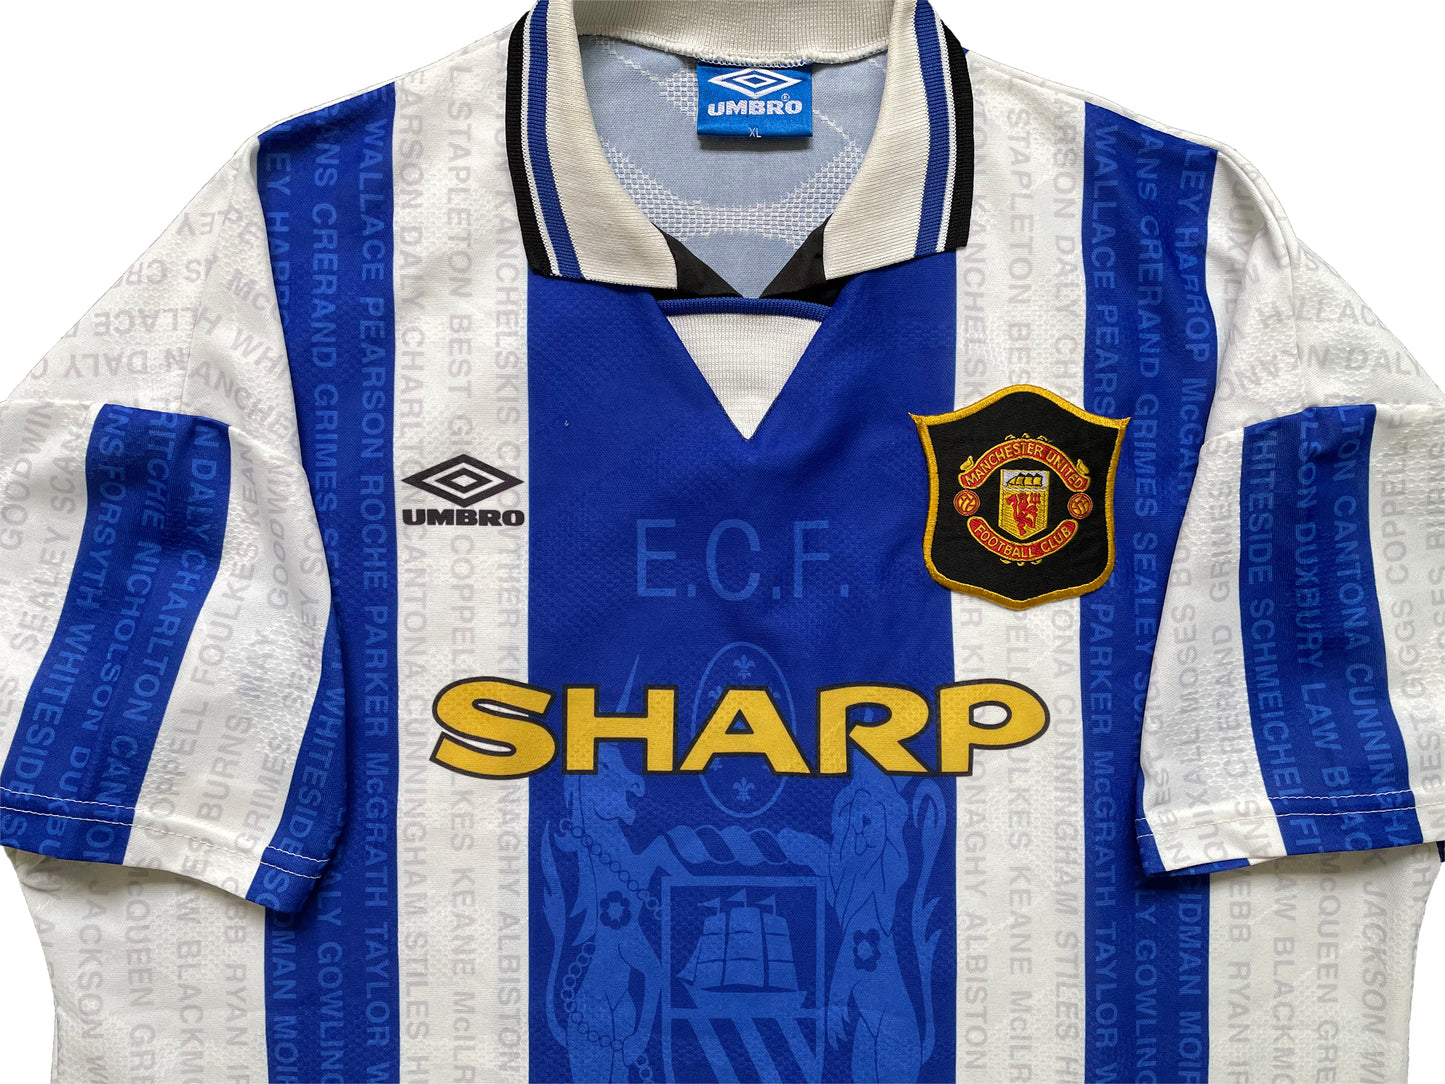 1994-1996 Manchester United third shirt (XL)